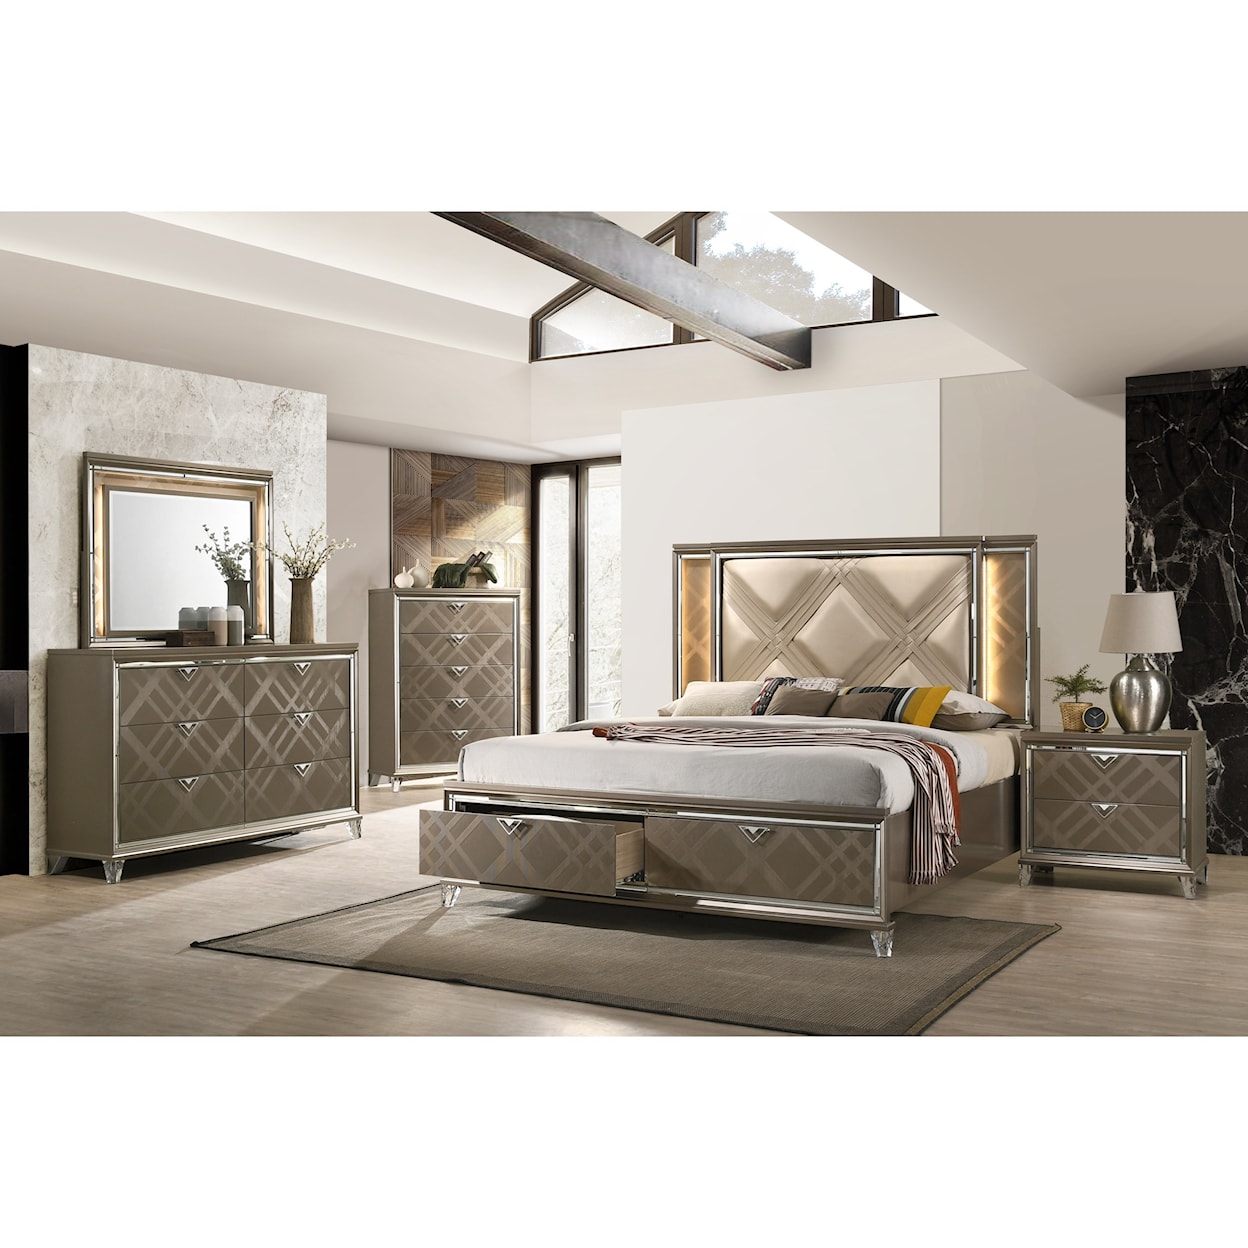 Acme Furniture Skylar 7pc Full Bedroom Group